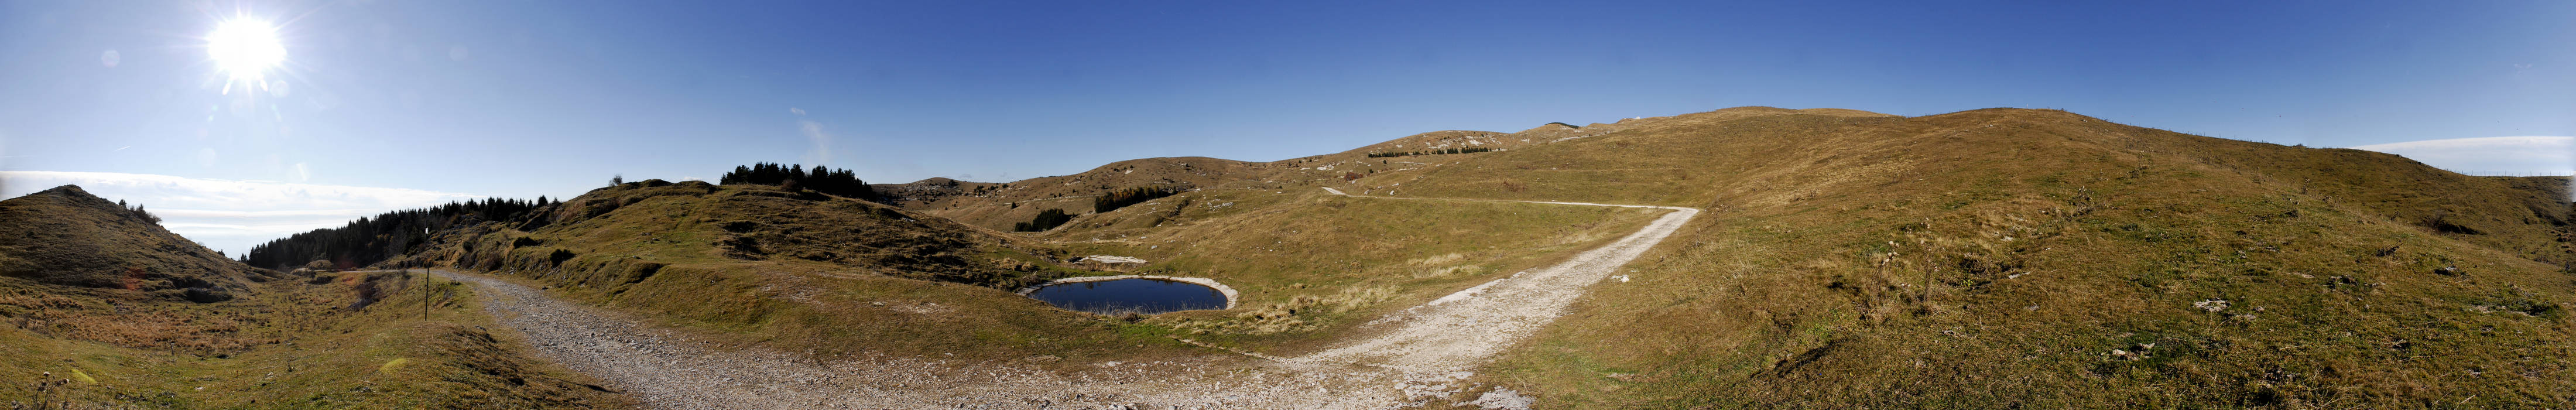 Monte Grappa, malga Meda - fotografia panoramica